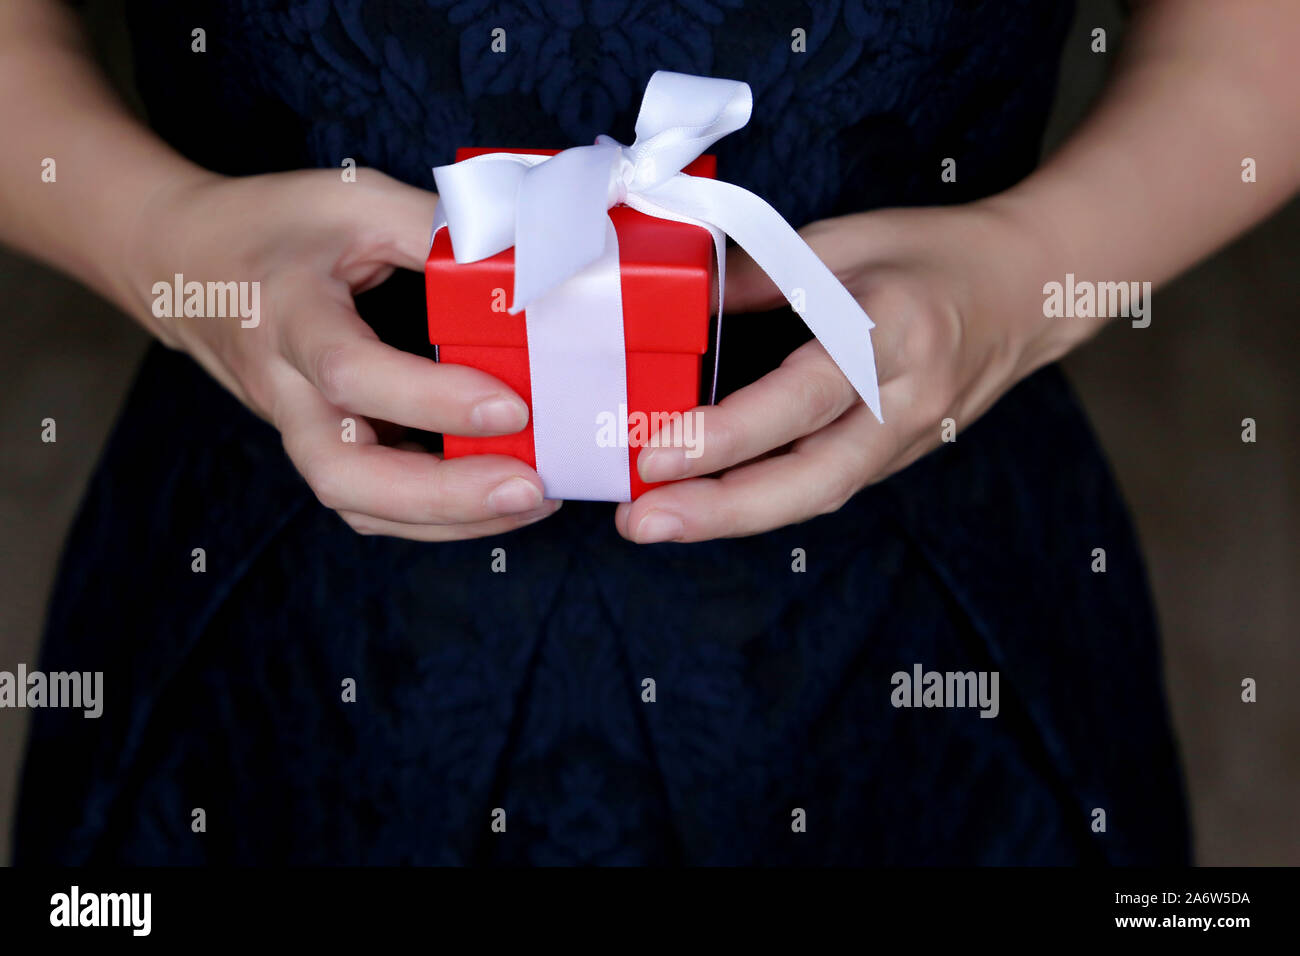 Confezione regalo rossa in mani femminili, donna in blu abito da sera tenendo presente. Concetto di sorpresa romantica, Natale e Capodanno Foto Stock